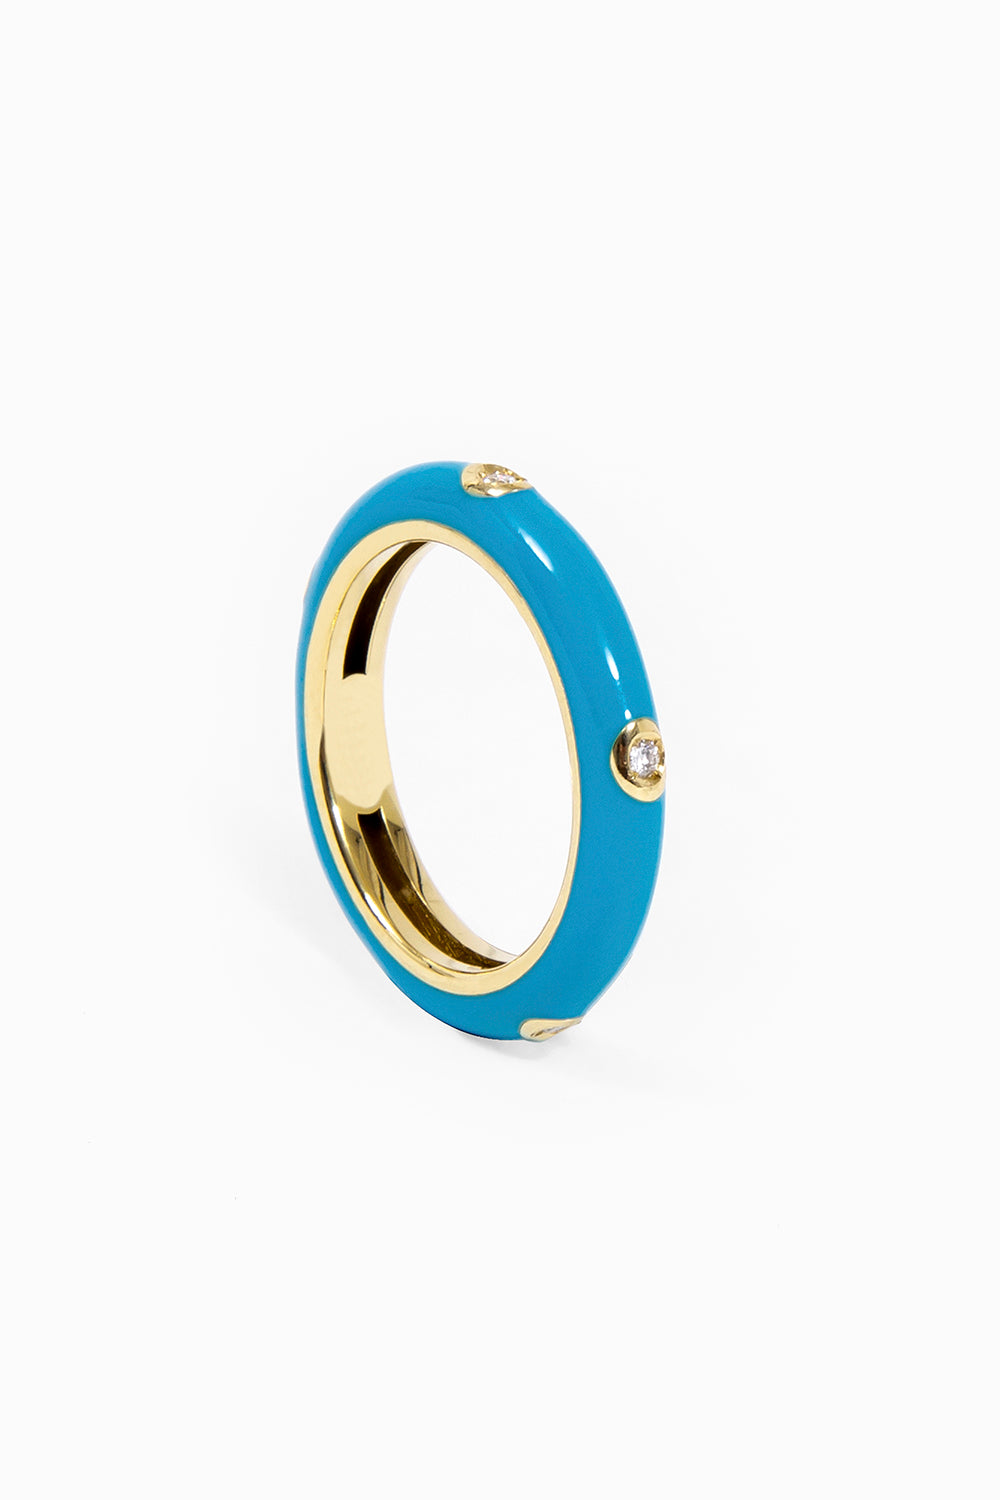 Enameled ring turquoise